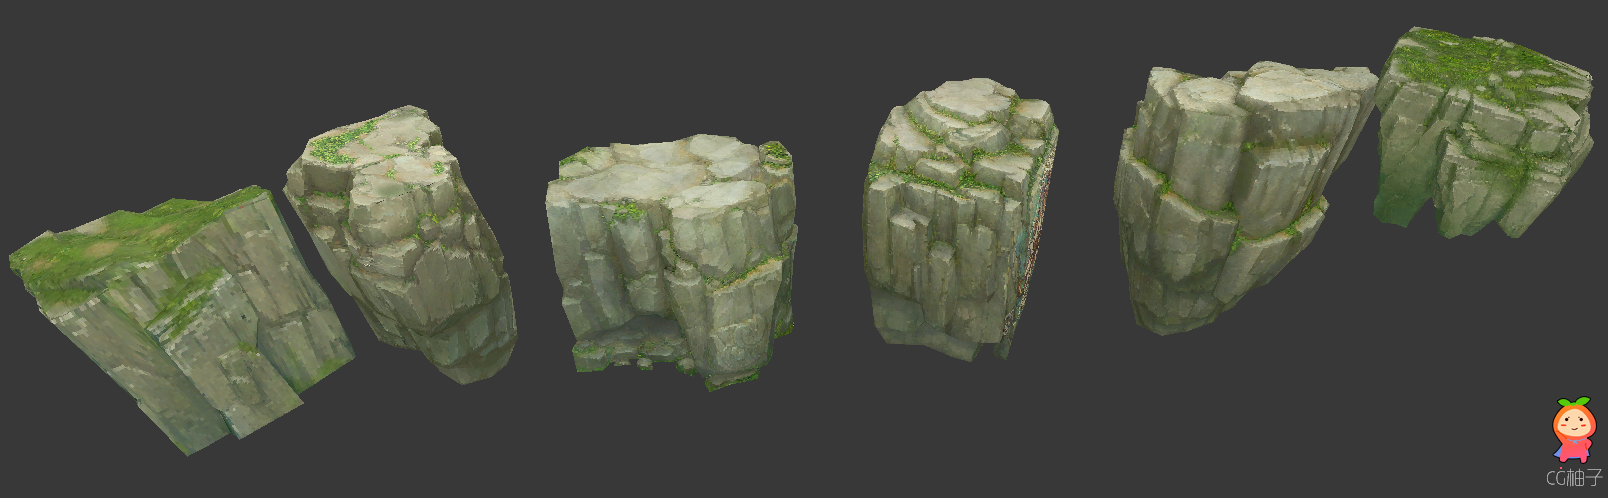 一堆石头石块山石石头路模型 苔藓石头低模